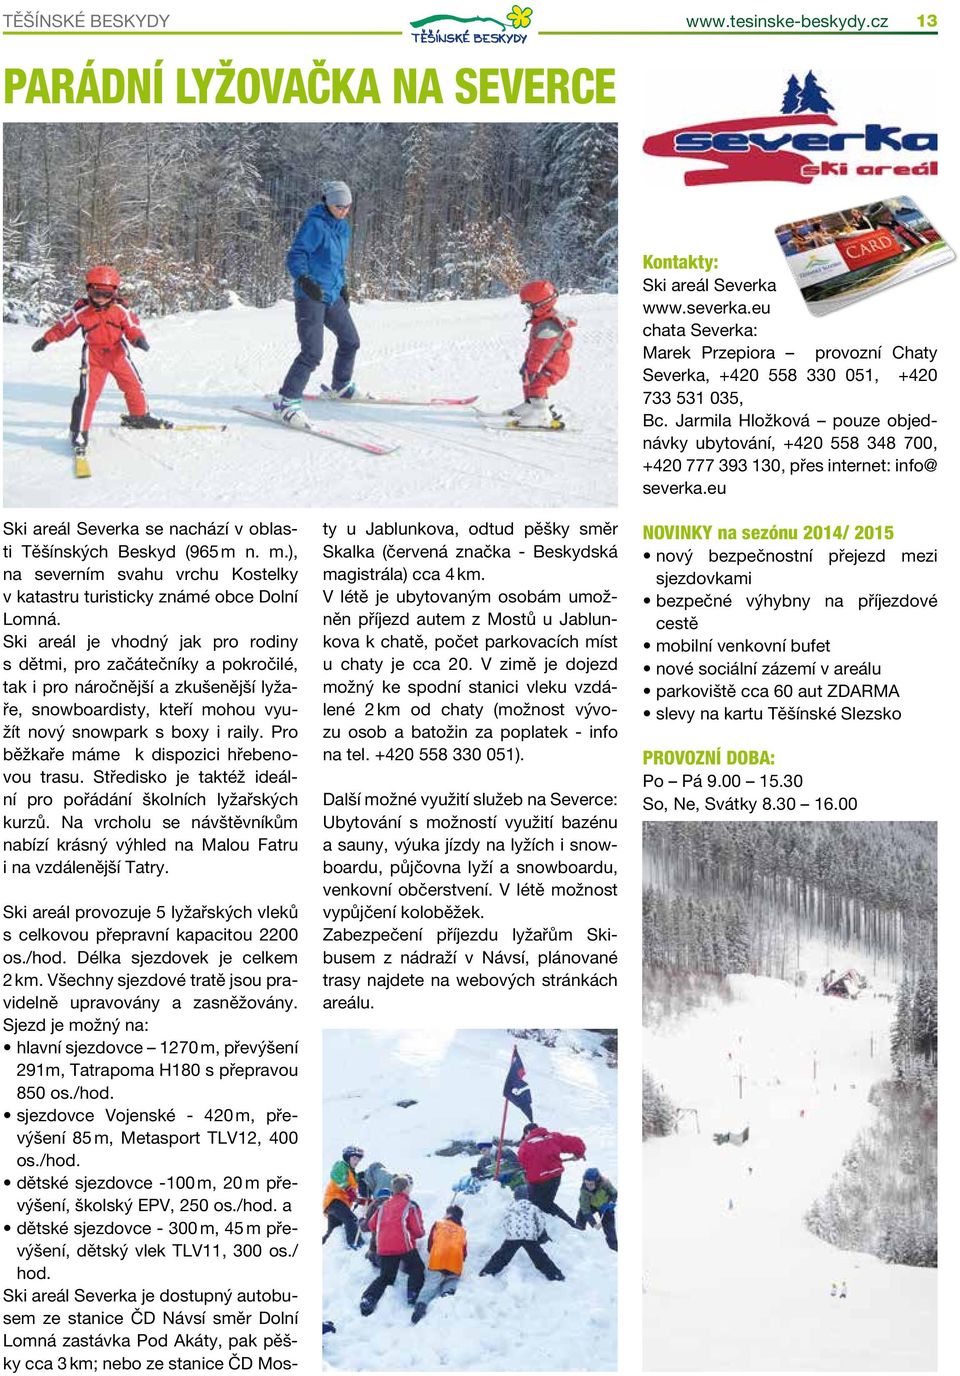 Ski areál je vhodný jak pro rodiny s dětmi, pro začátečníky a pokročilé, tak i pro náročnější a zkušenější lyžaře, snowboardisty, kteří mohou využít nový snowpark s boxy i raily.